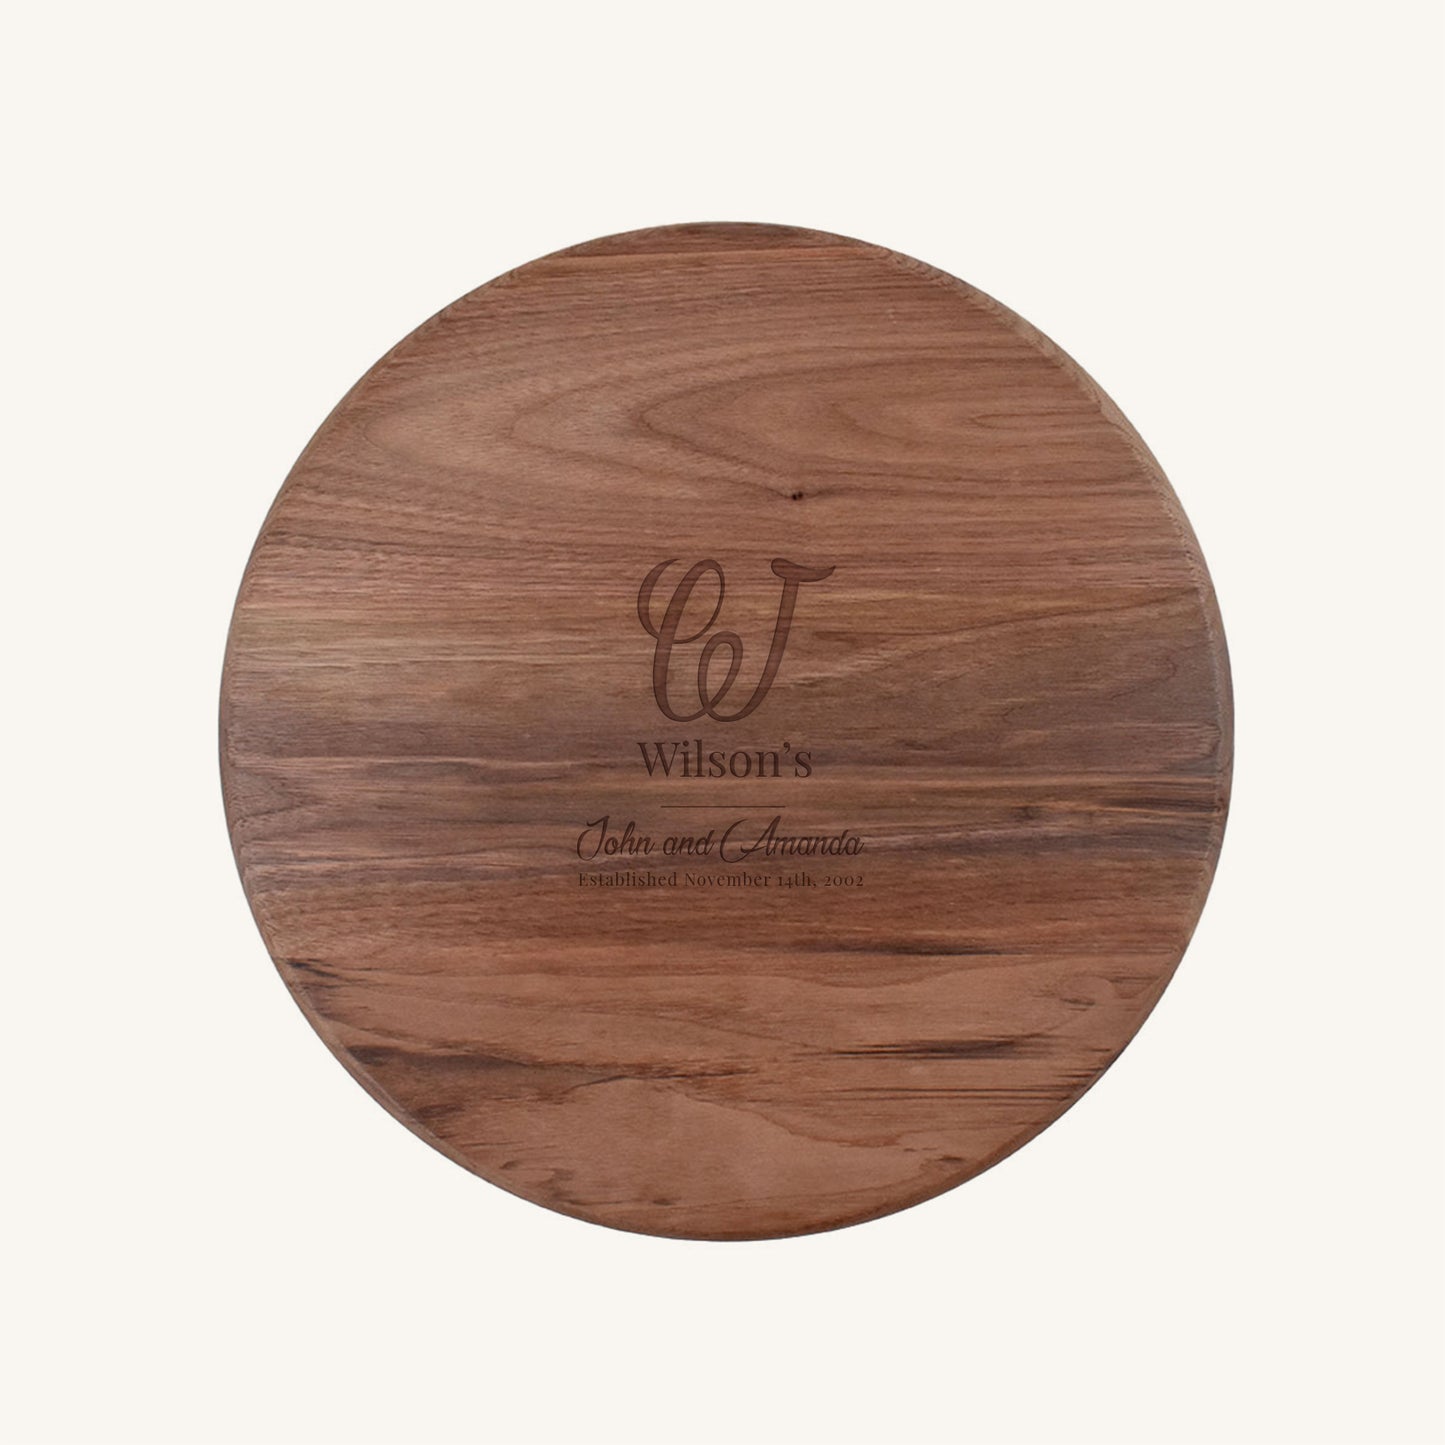 Round 15 Inch Wood Cutting Board